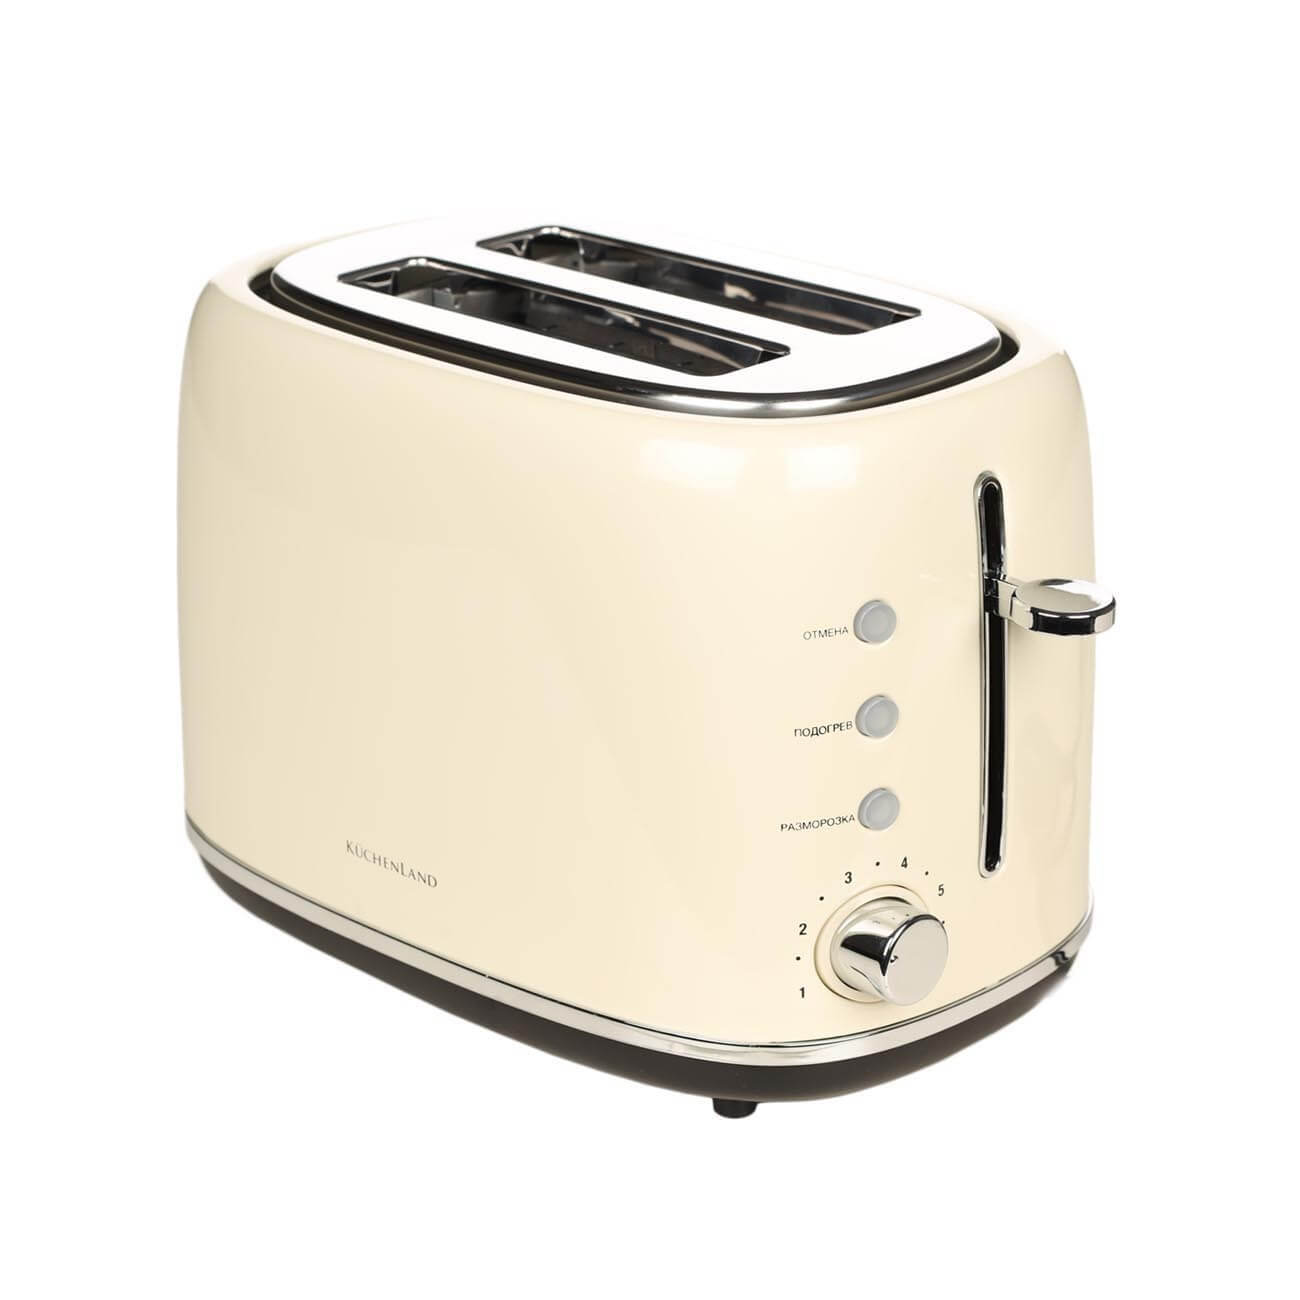 Тостер электрический, 730-870 Вт, 6 режимов, сталь/пластик, бежевый, Vintage kitchen тостер bork t703